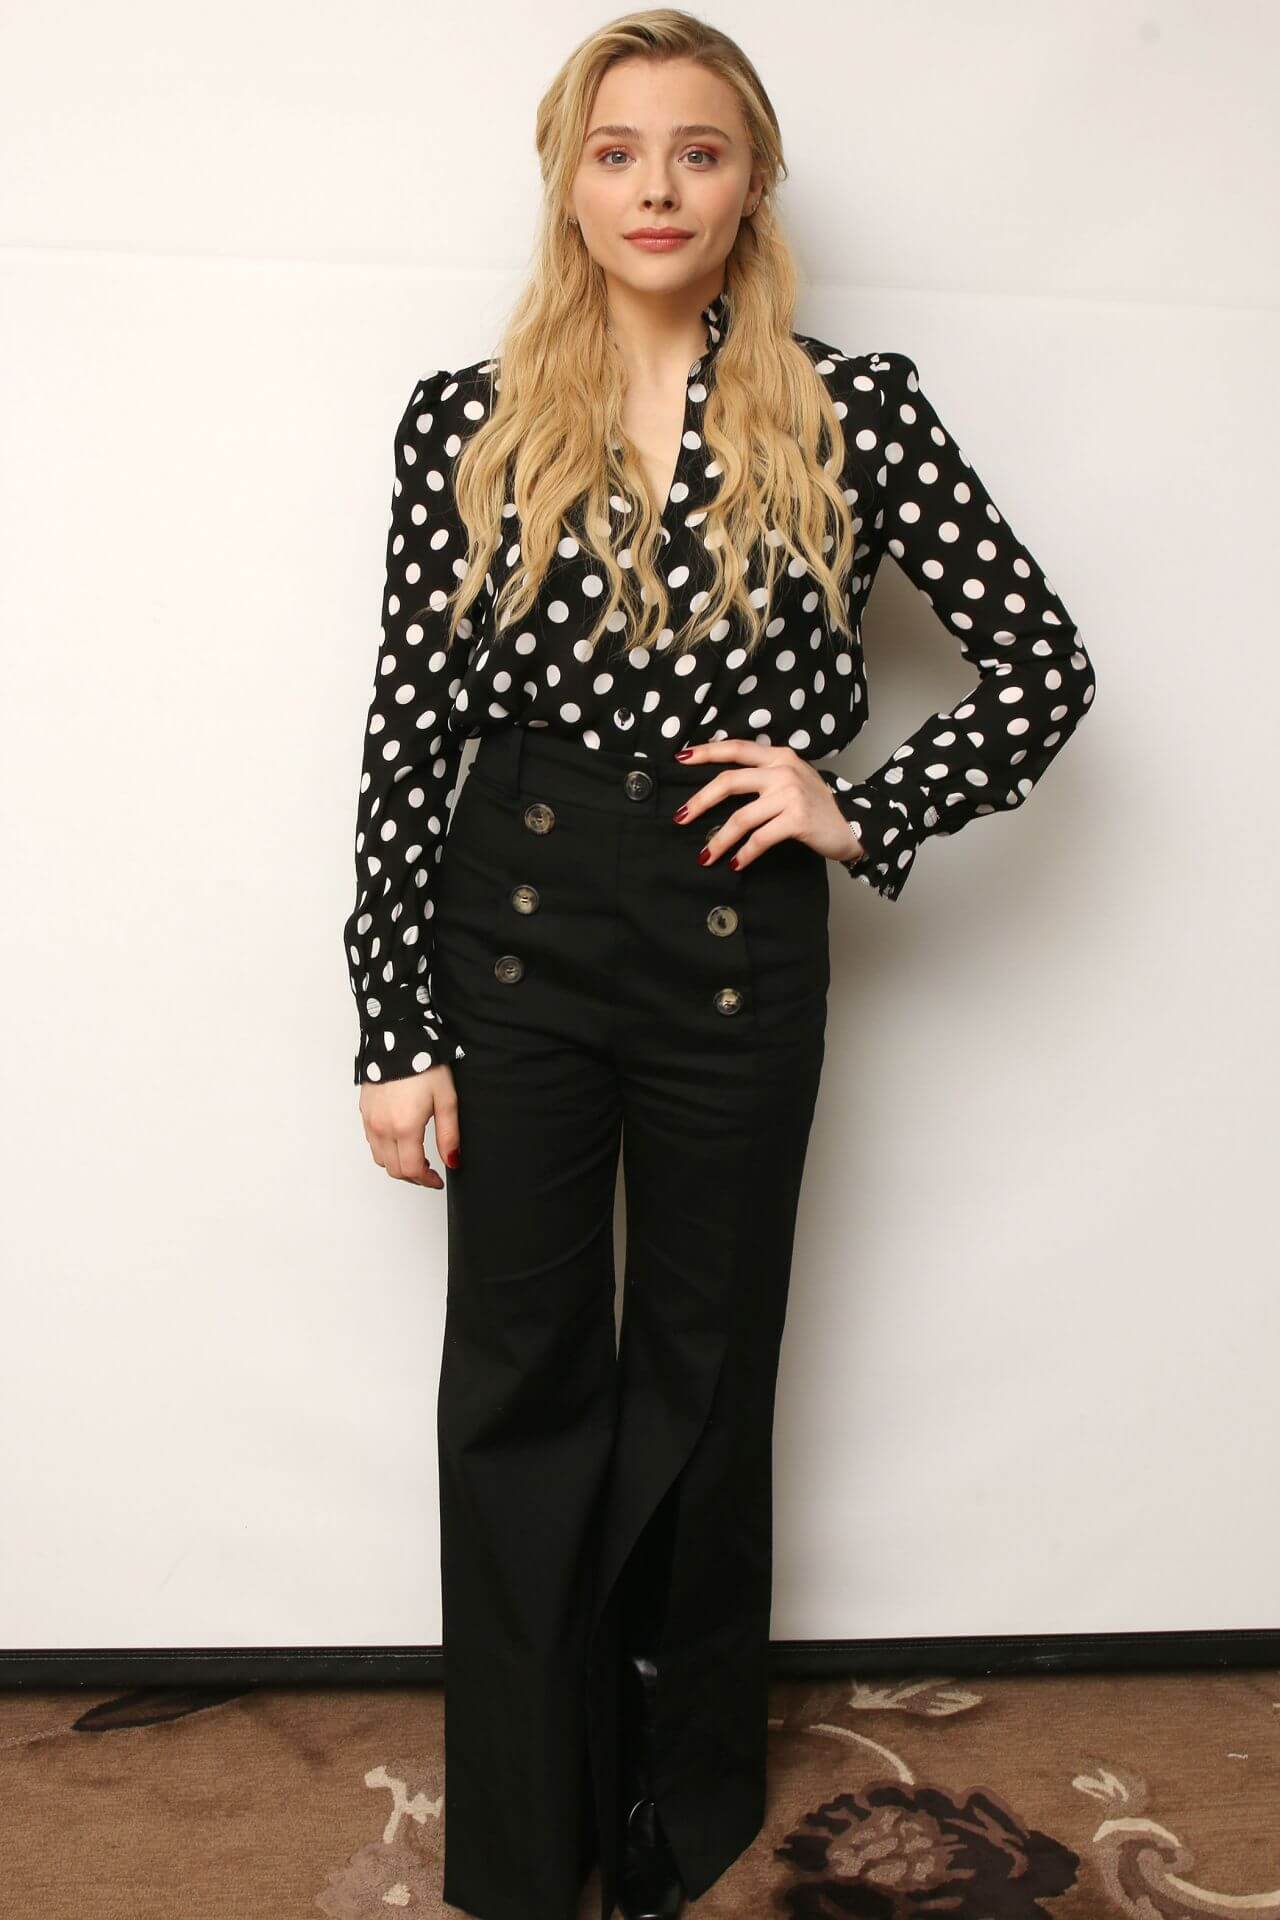 Chloe Moretz  In Polka Dot Full Sleeves Top With Black Bottoms At“Greta” Press Conference in LA